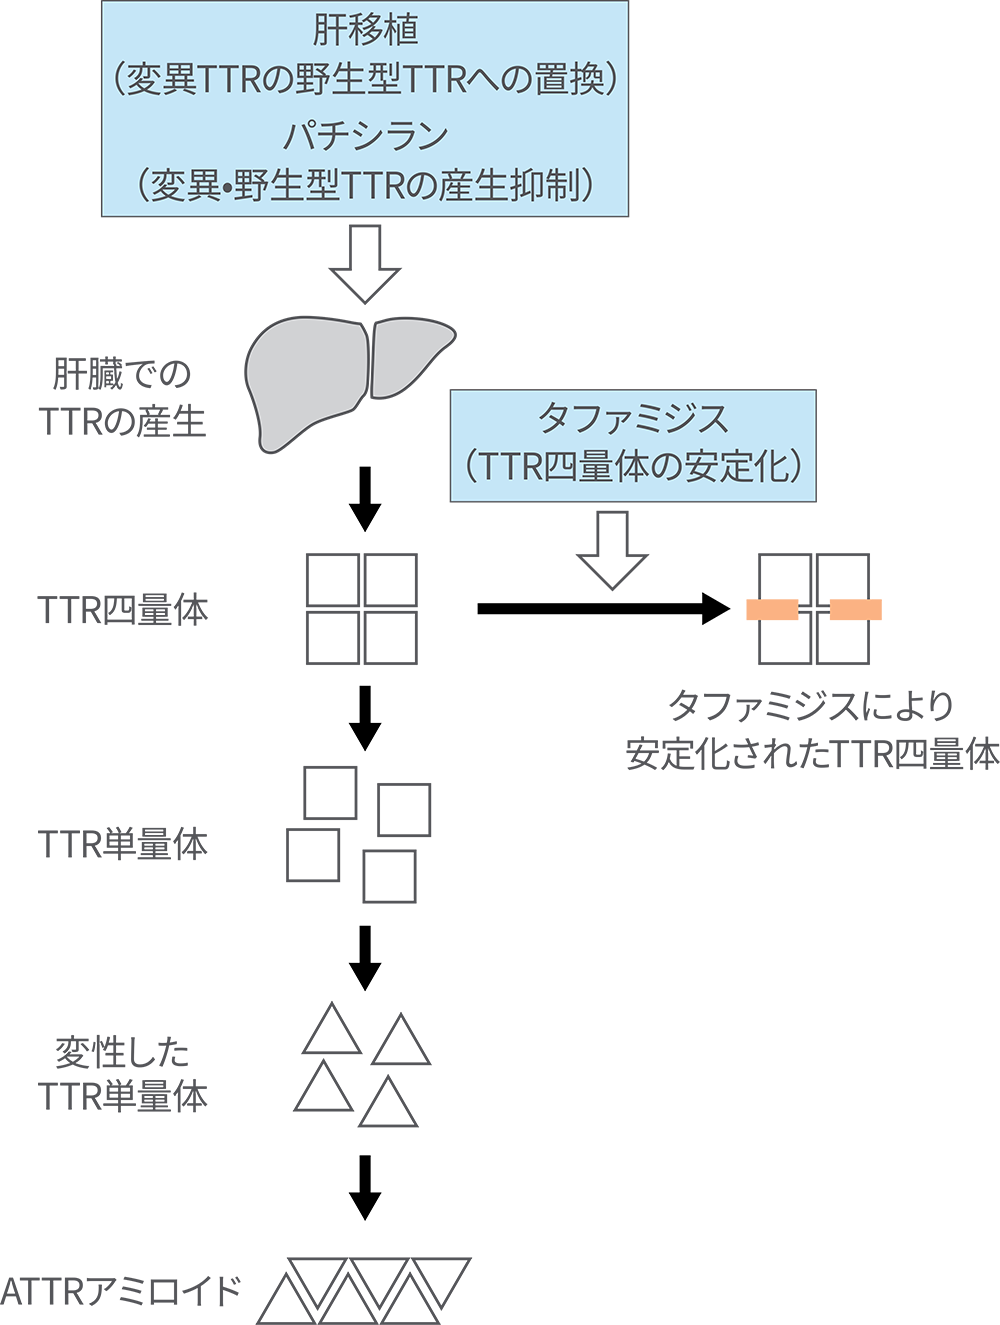 ATTRアミロイドの形成機序およびわが国で認可されている疾患修飾療法の作用機序